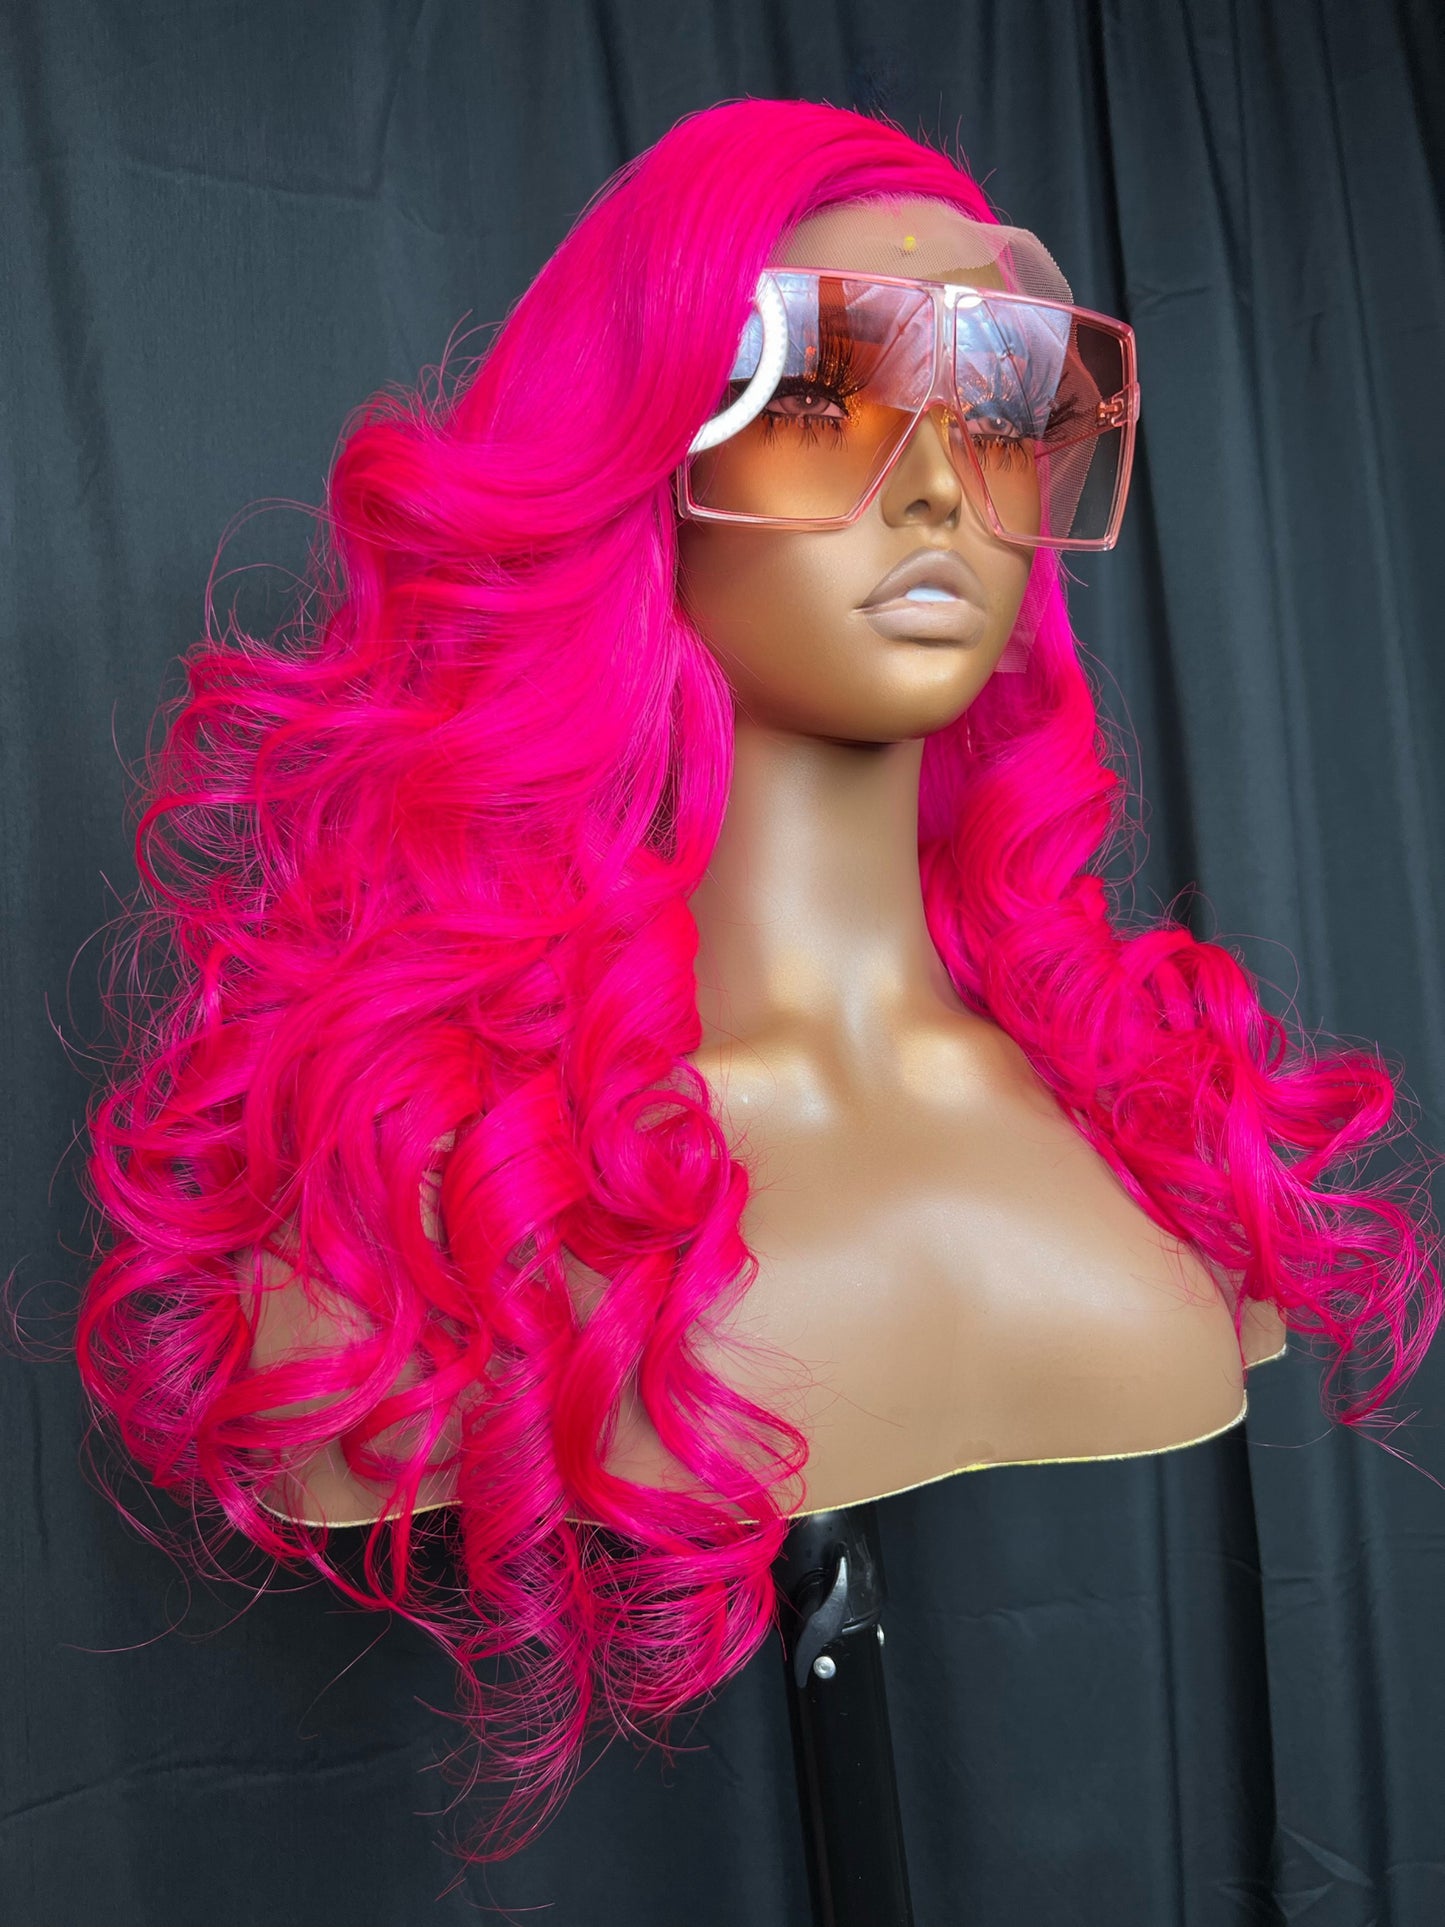 “Barbie Pink”